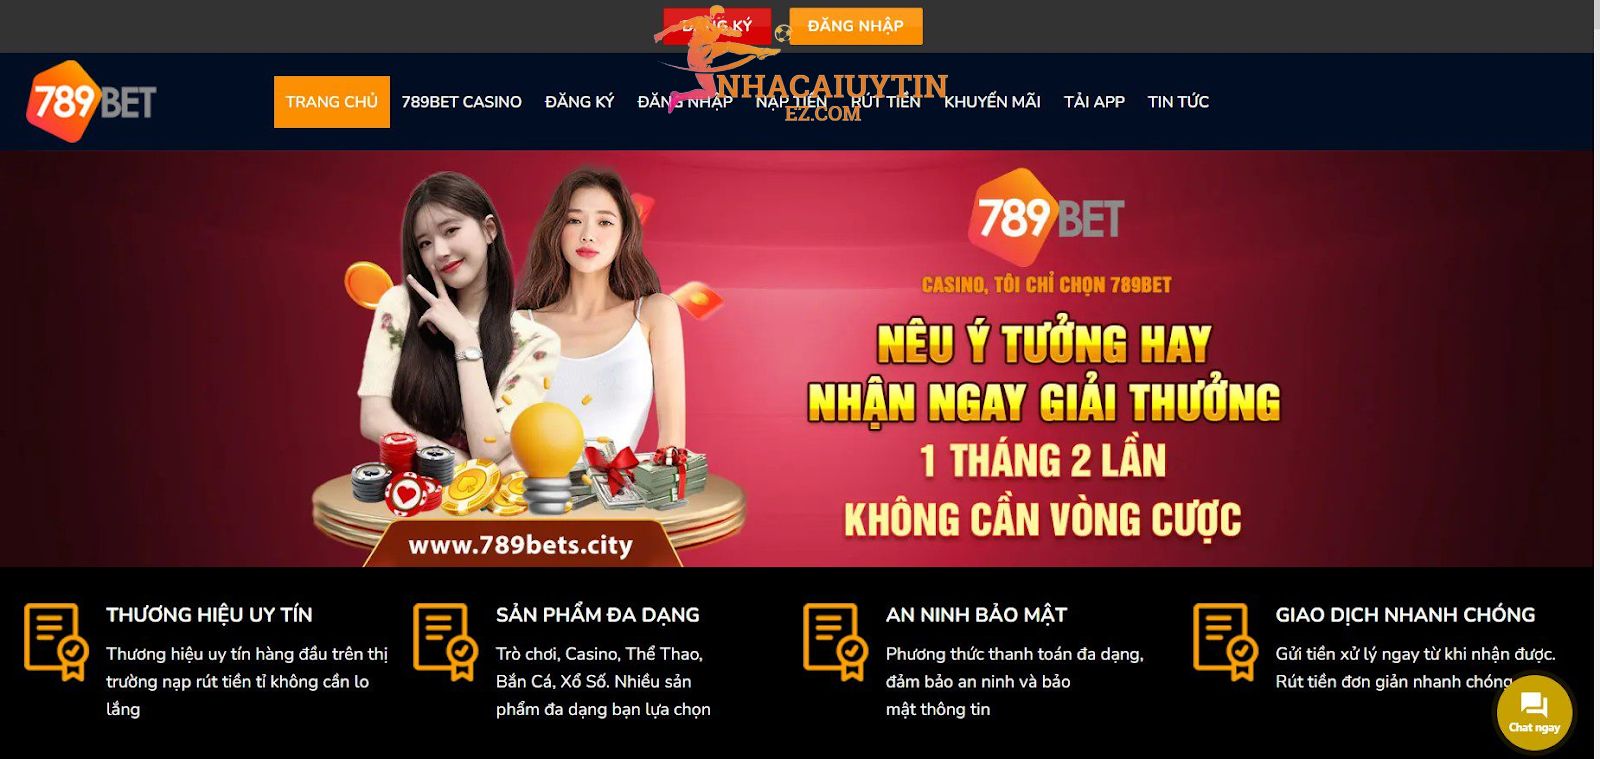 789bet được nhận xét là một trong các nhà cái trực tuyến hàng đầu ở Việt Nam